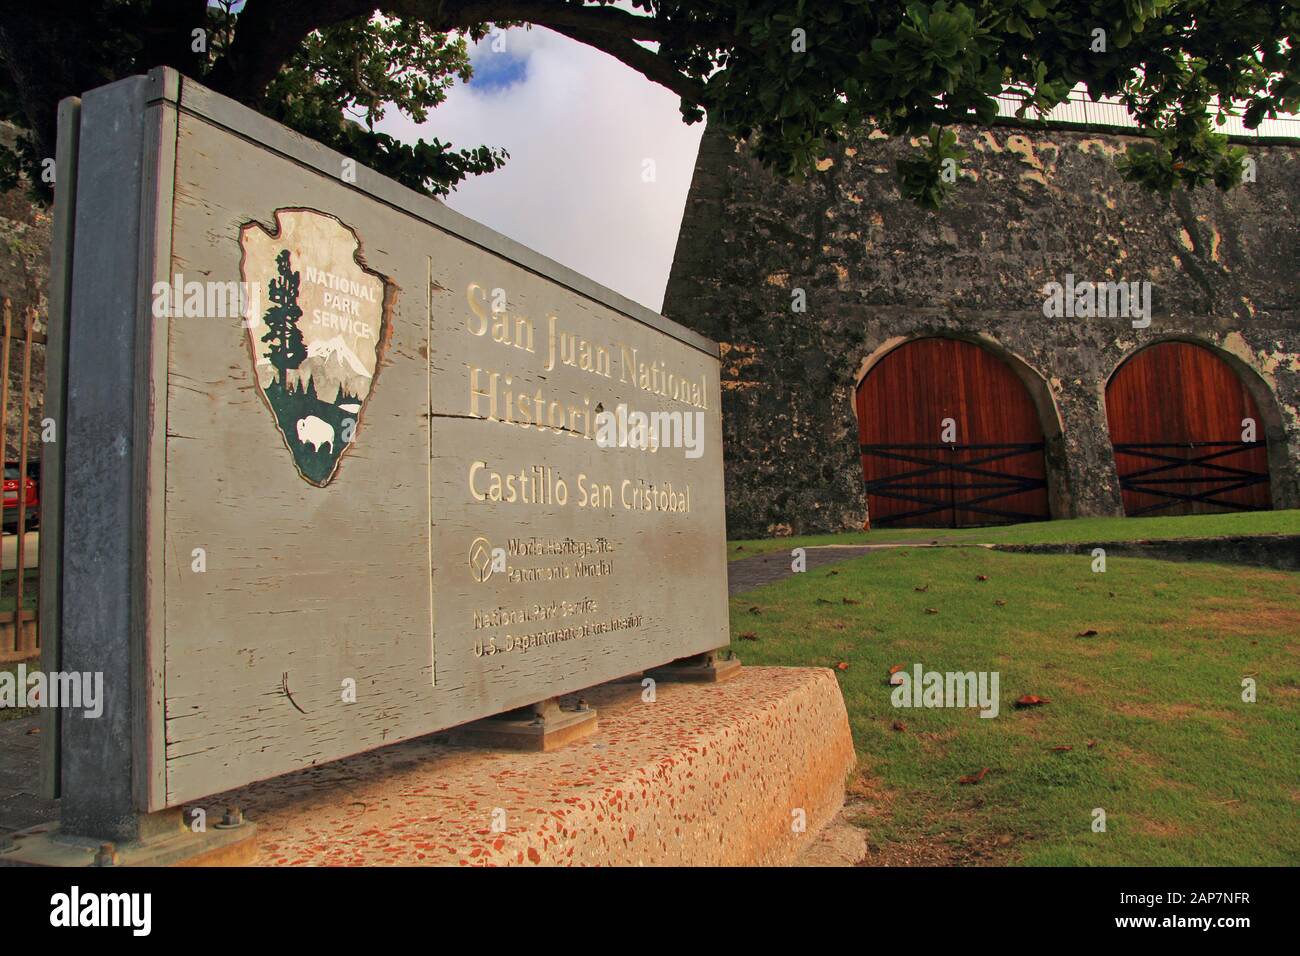 Ein Schild des National Park Service markiert den Eingang zum Castillo San Cristobal, das sich in der Stadt San Juan in Puerto Rico befindet Stockfoto